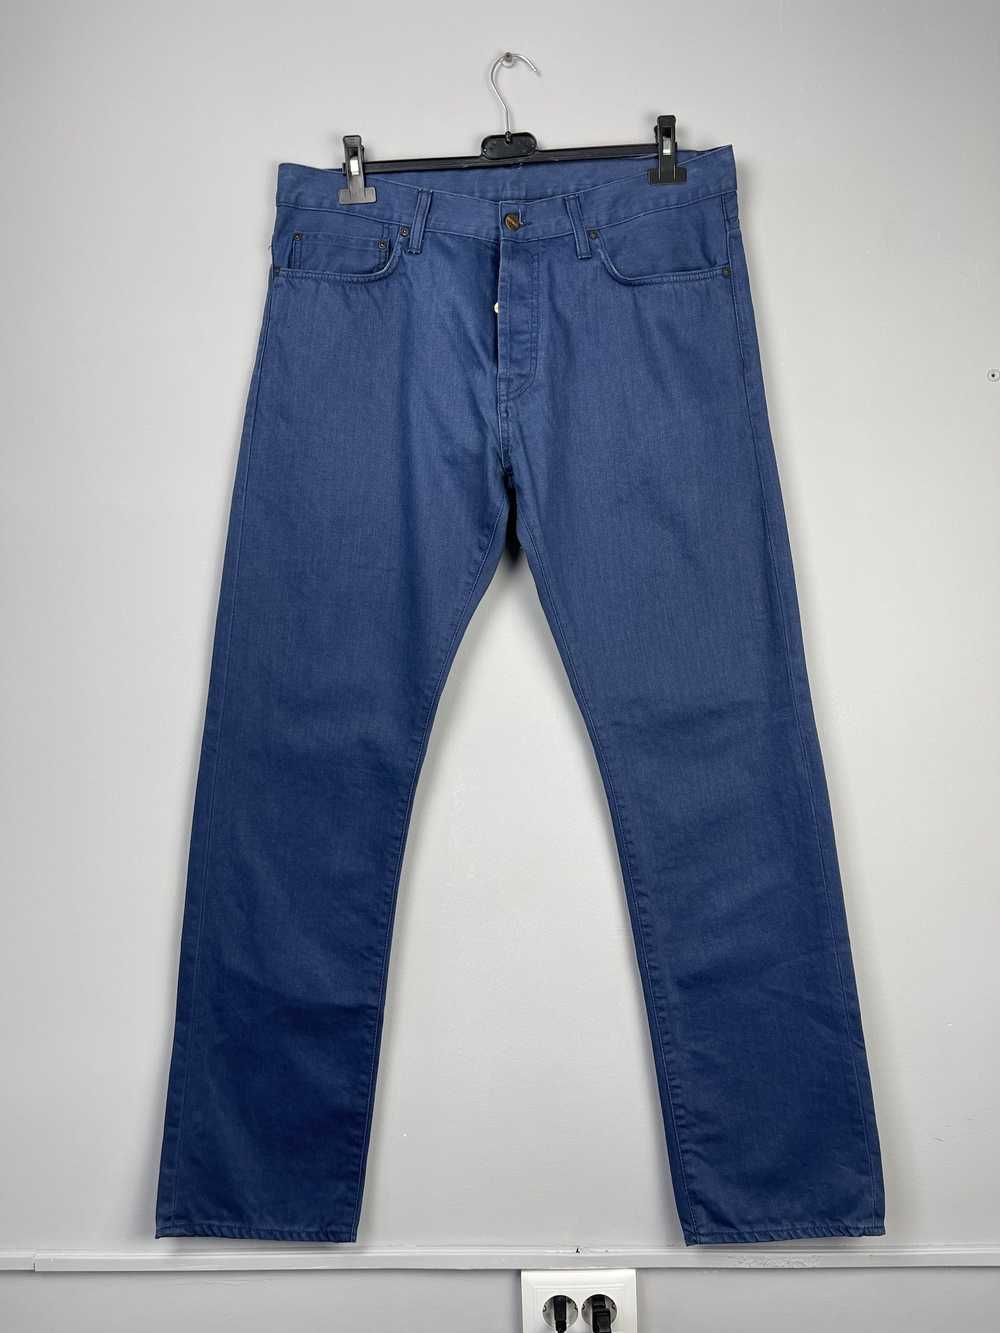 Carhartt × Streetwear Carhartt Klondike Pant Jeans - image 3